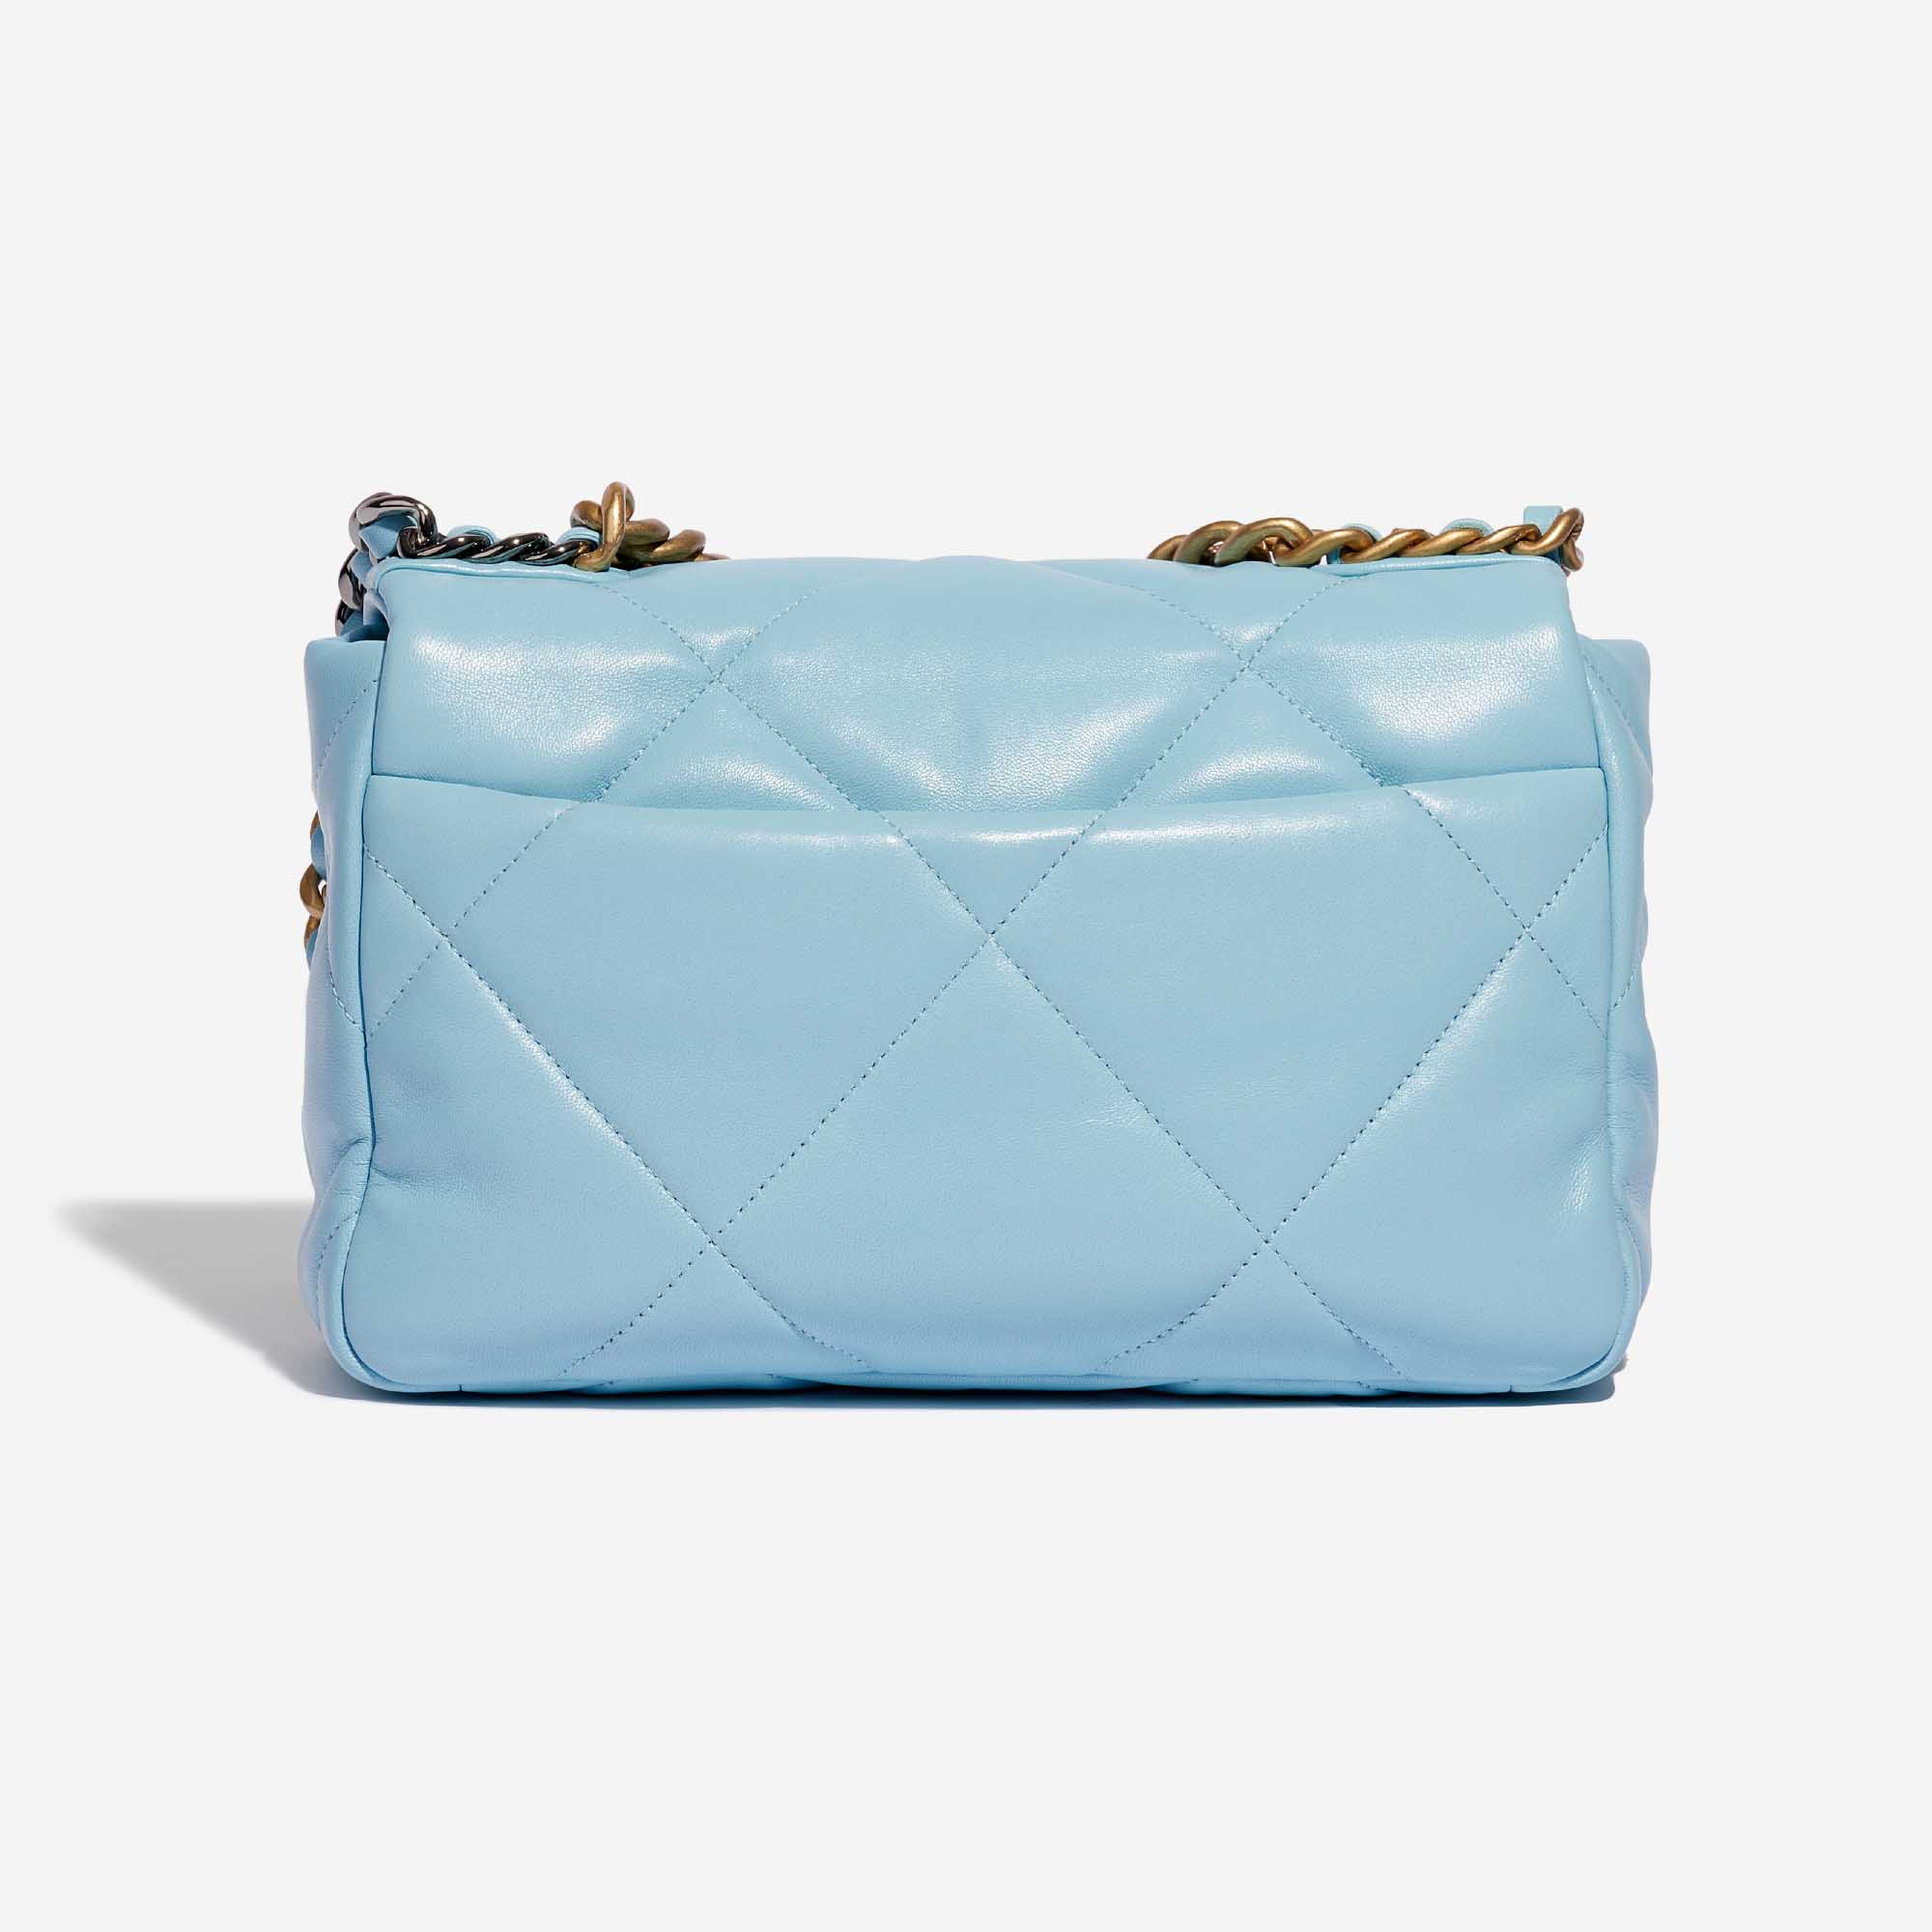 Pre-owned Chanel Tasche 19 Flap Bag Lammleder Sky Blue Blue Back | Verkaufen Sie Ihre Designer-Tasche auf Saclab.com